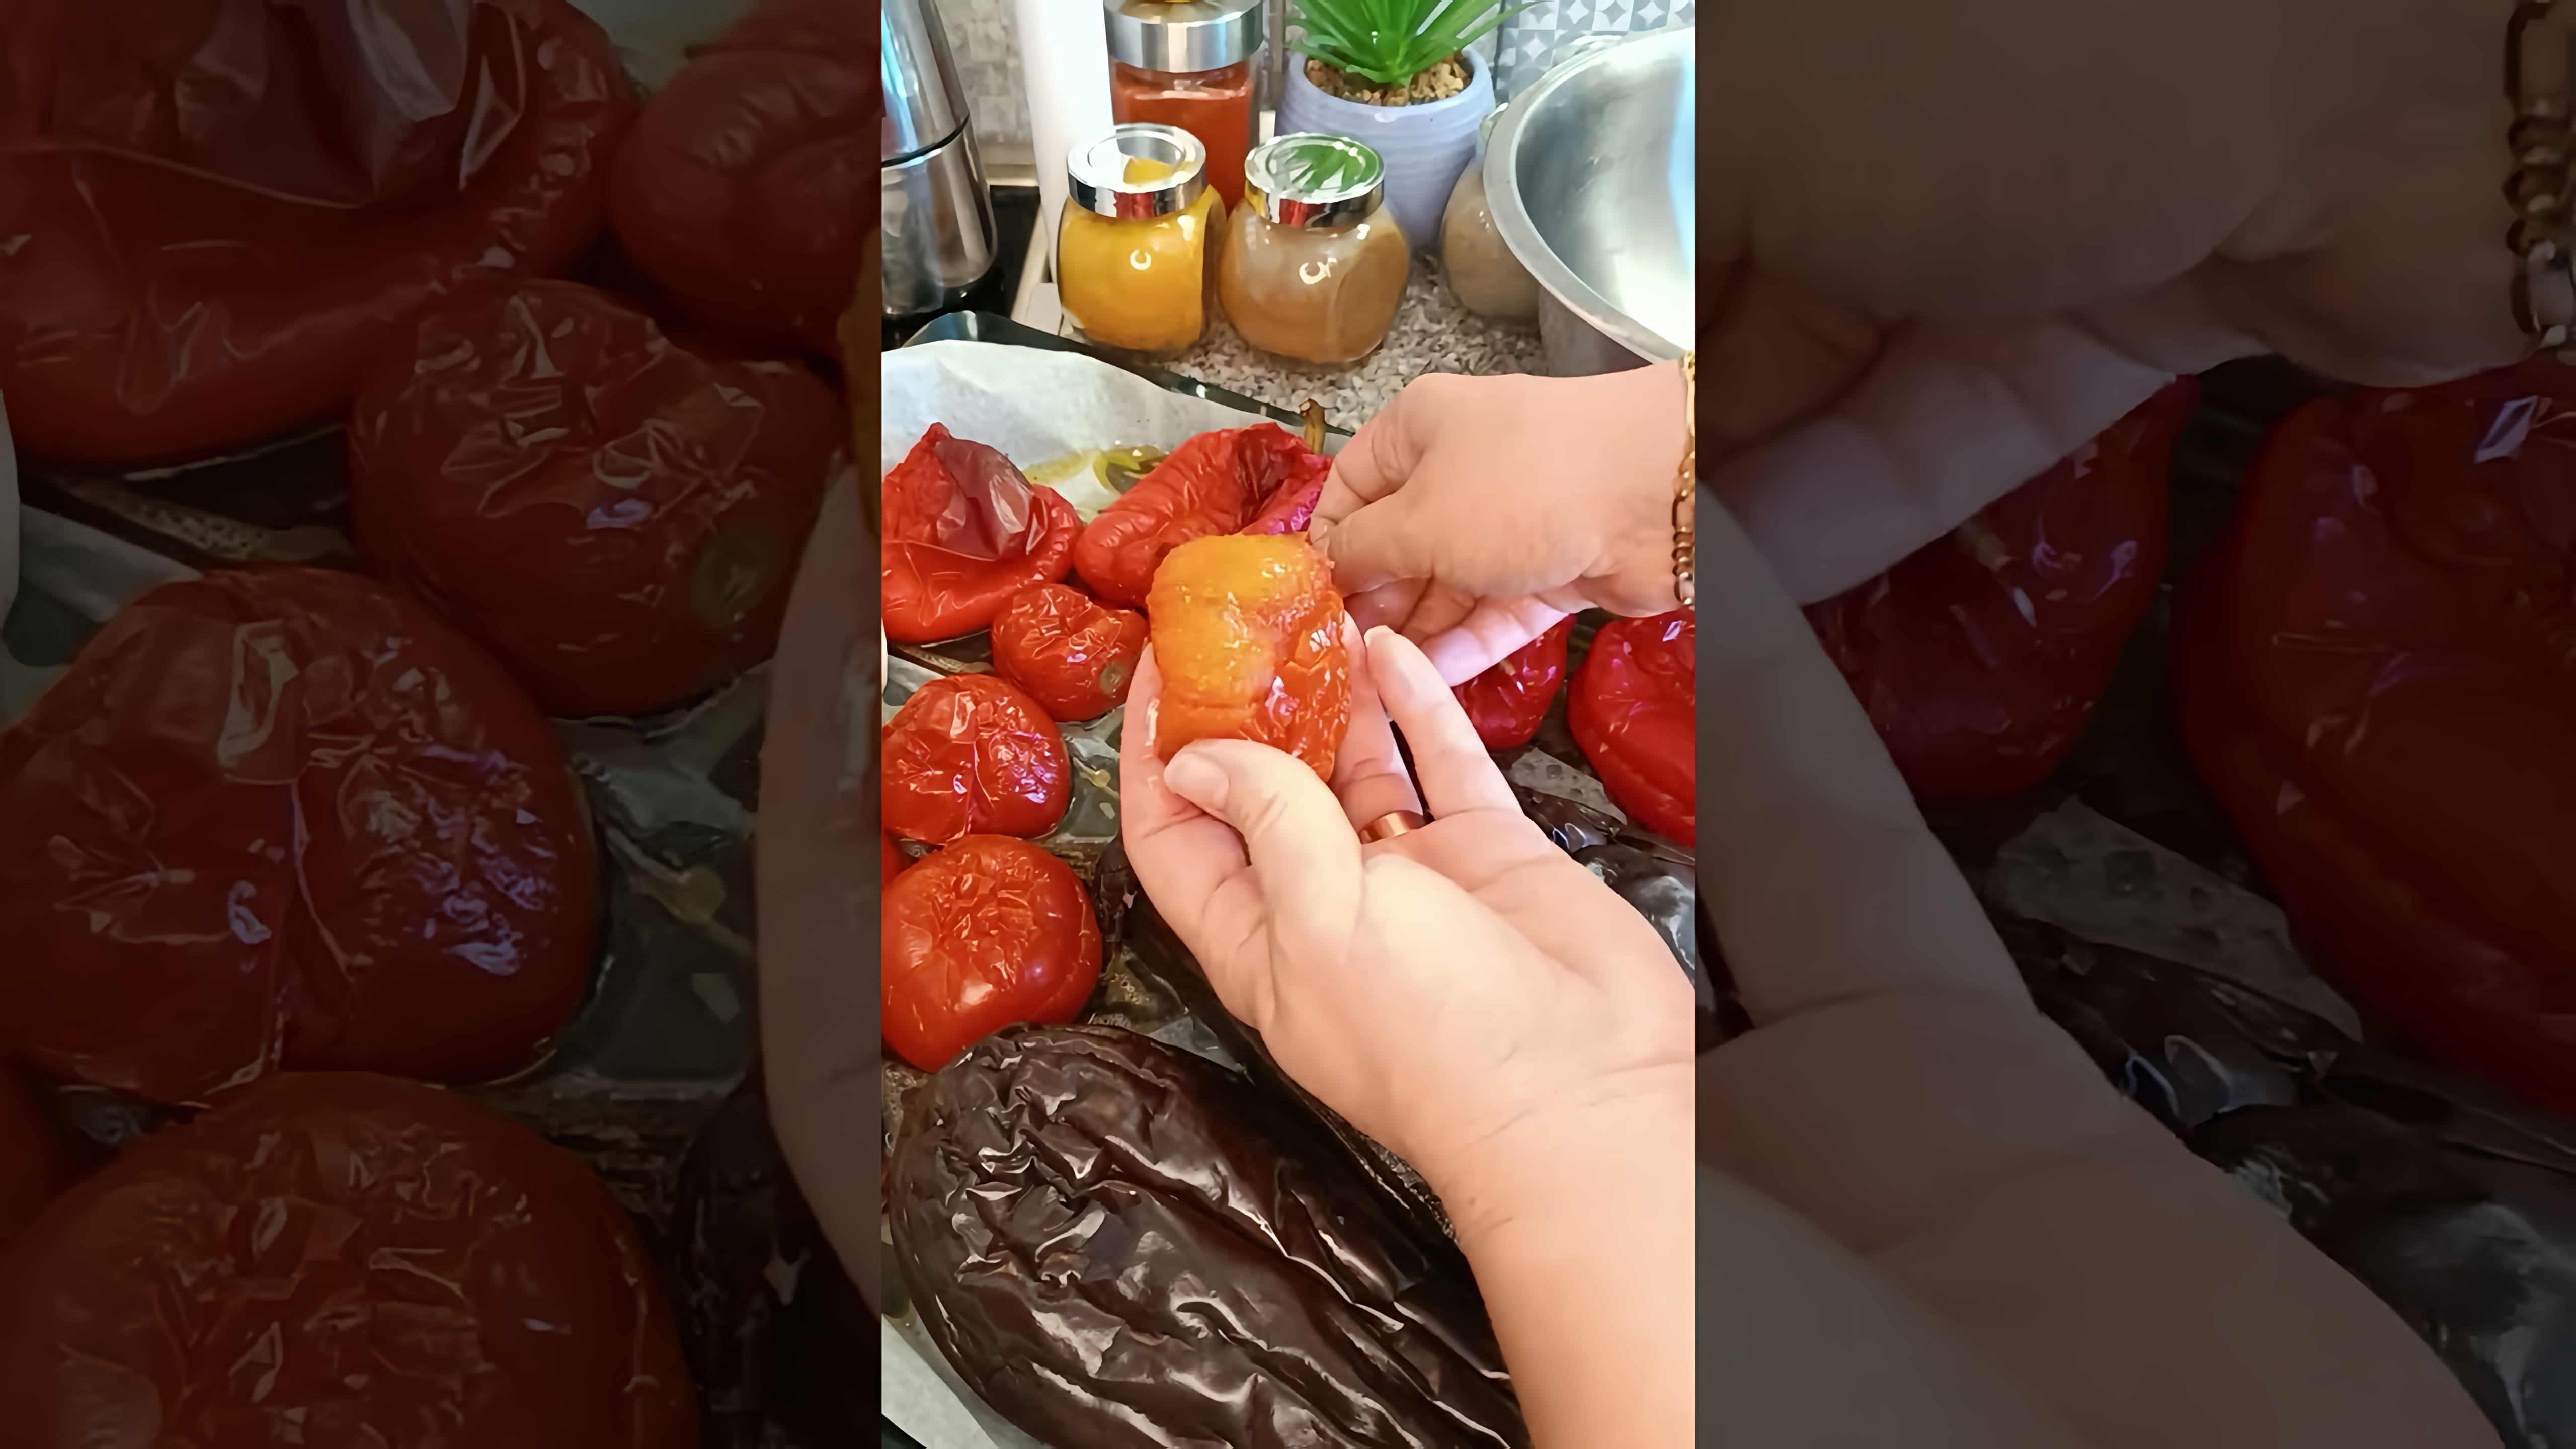 В этом видео демонстрируется процесс приготовления айвара - вкусной пасты из овощей